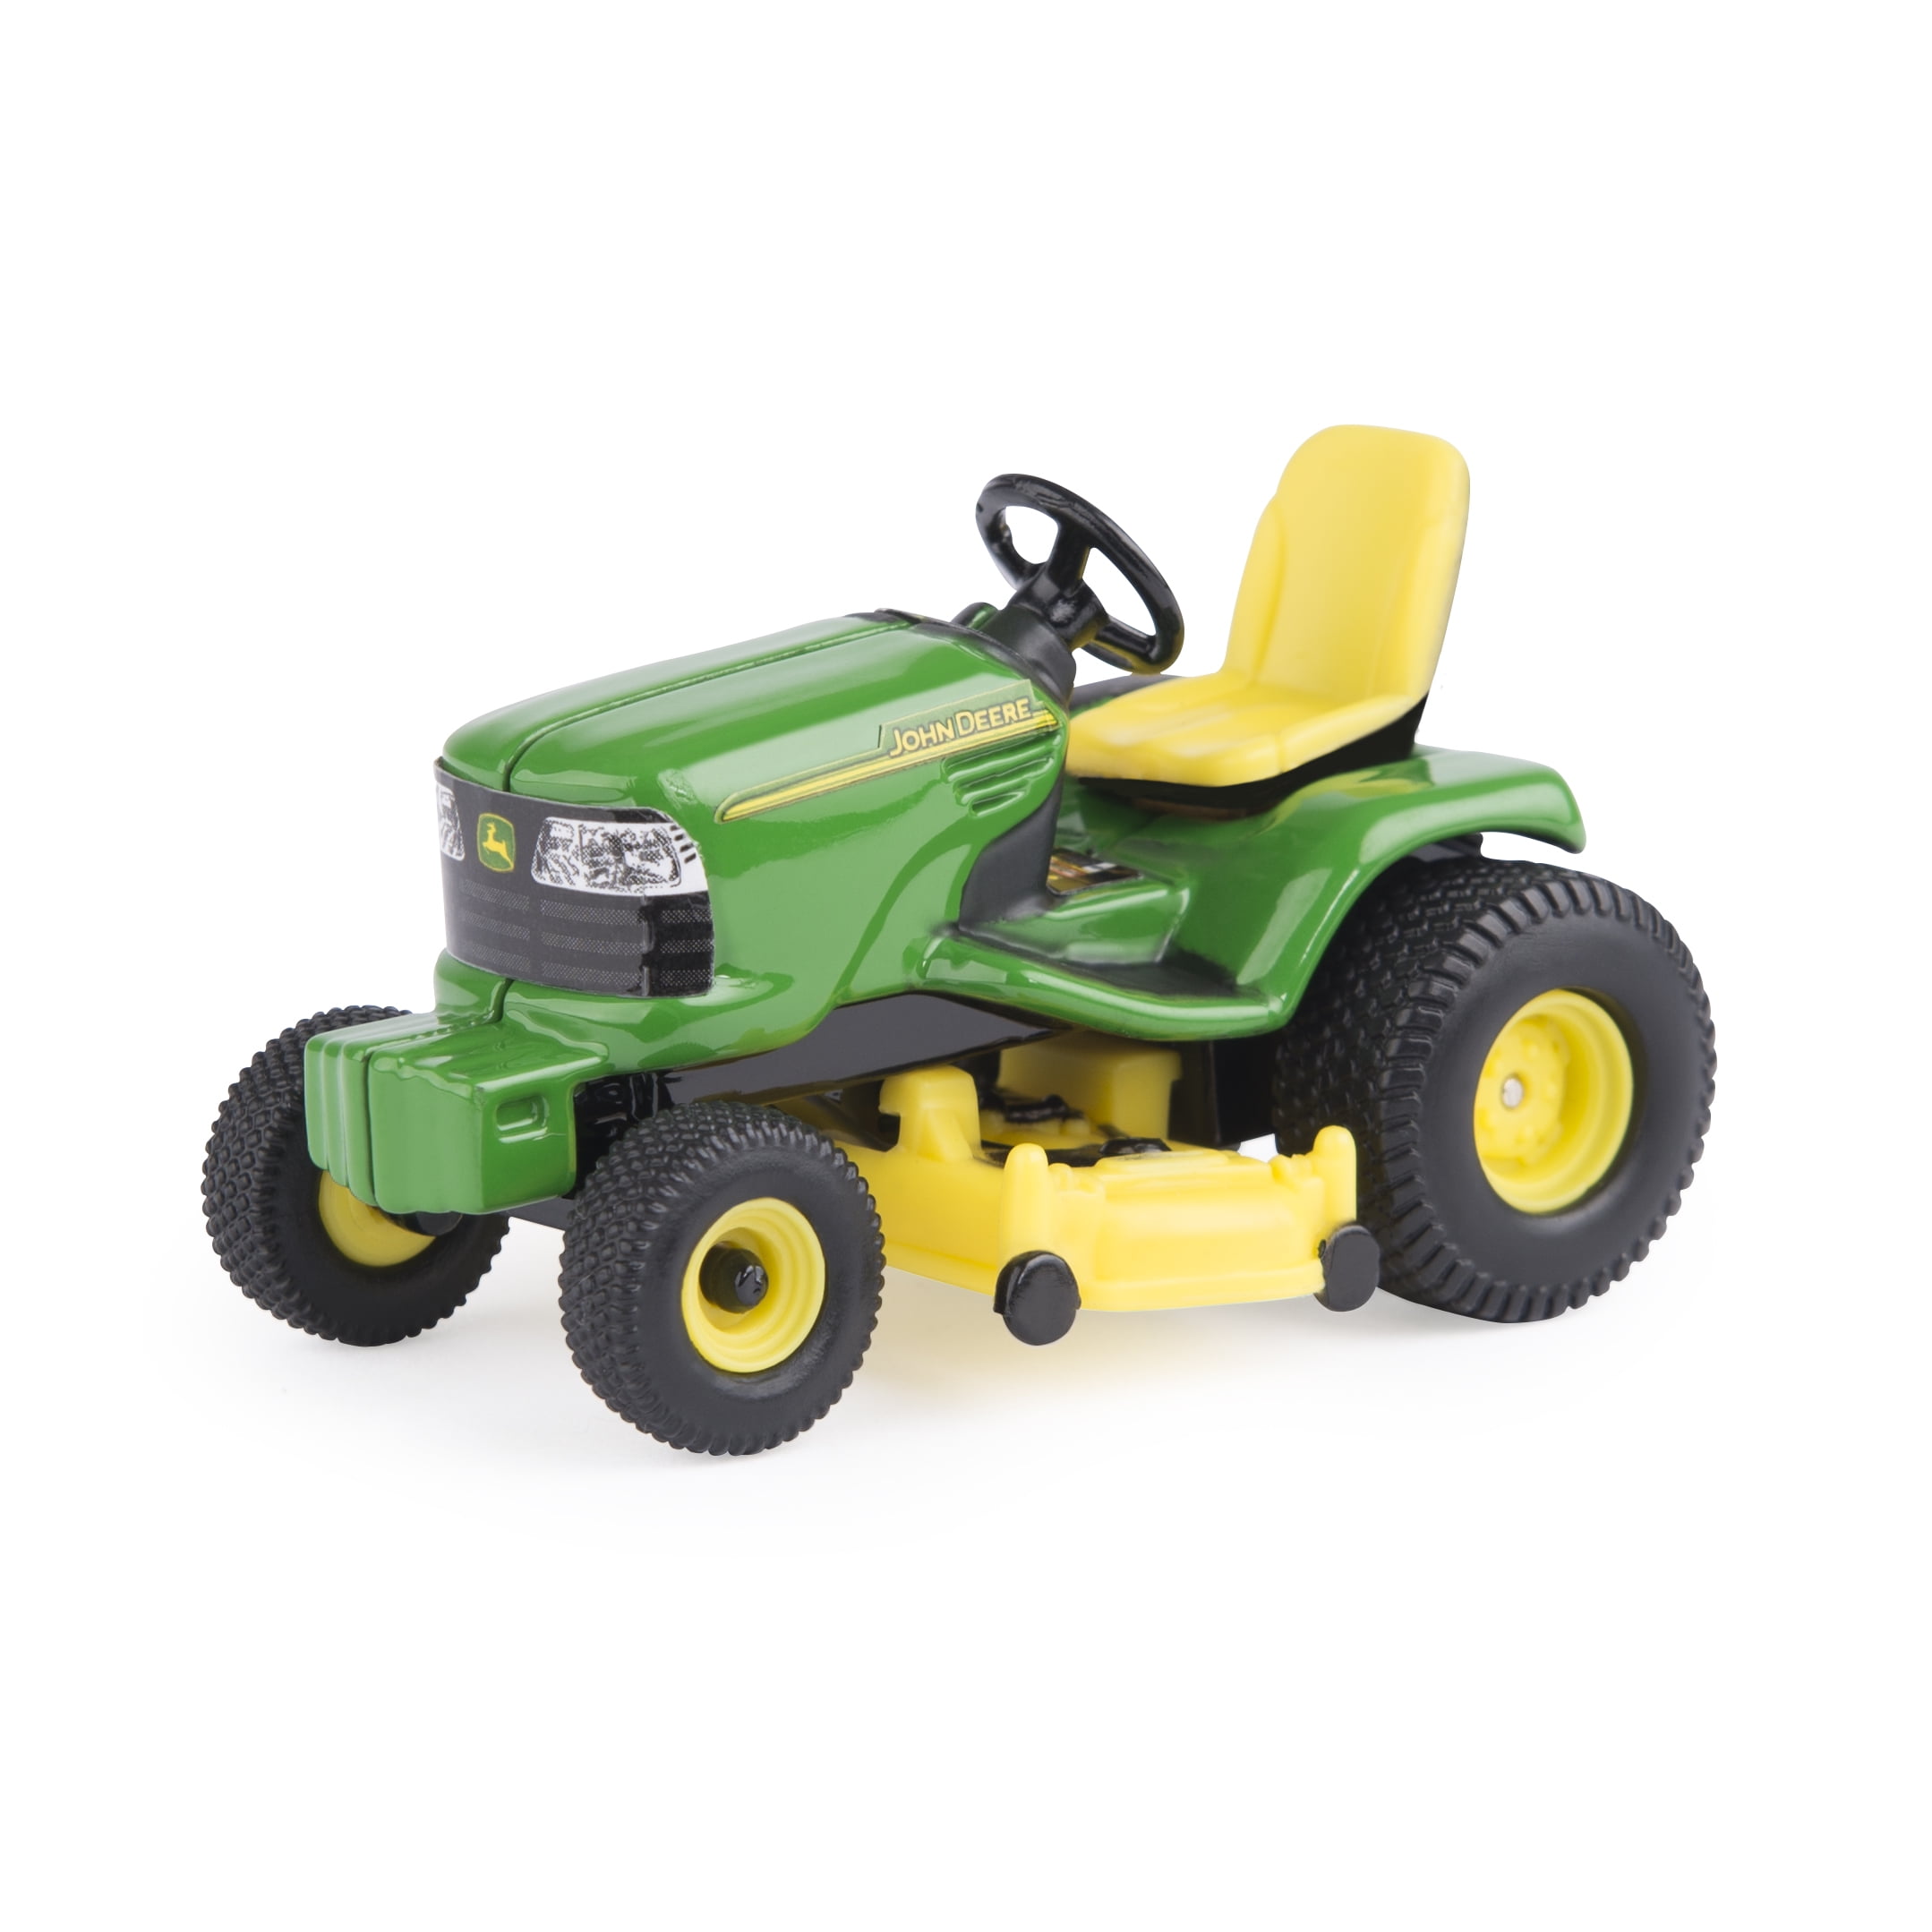 Ertl John Deere 1:16 Scale Model X320 Lawn Tractor 